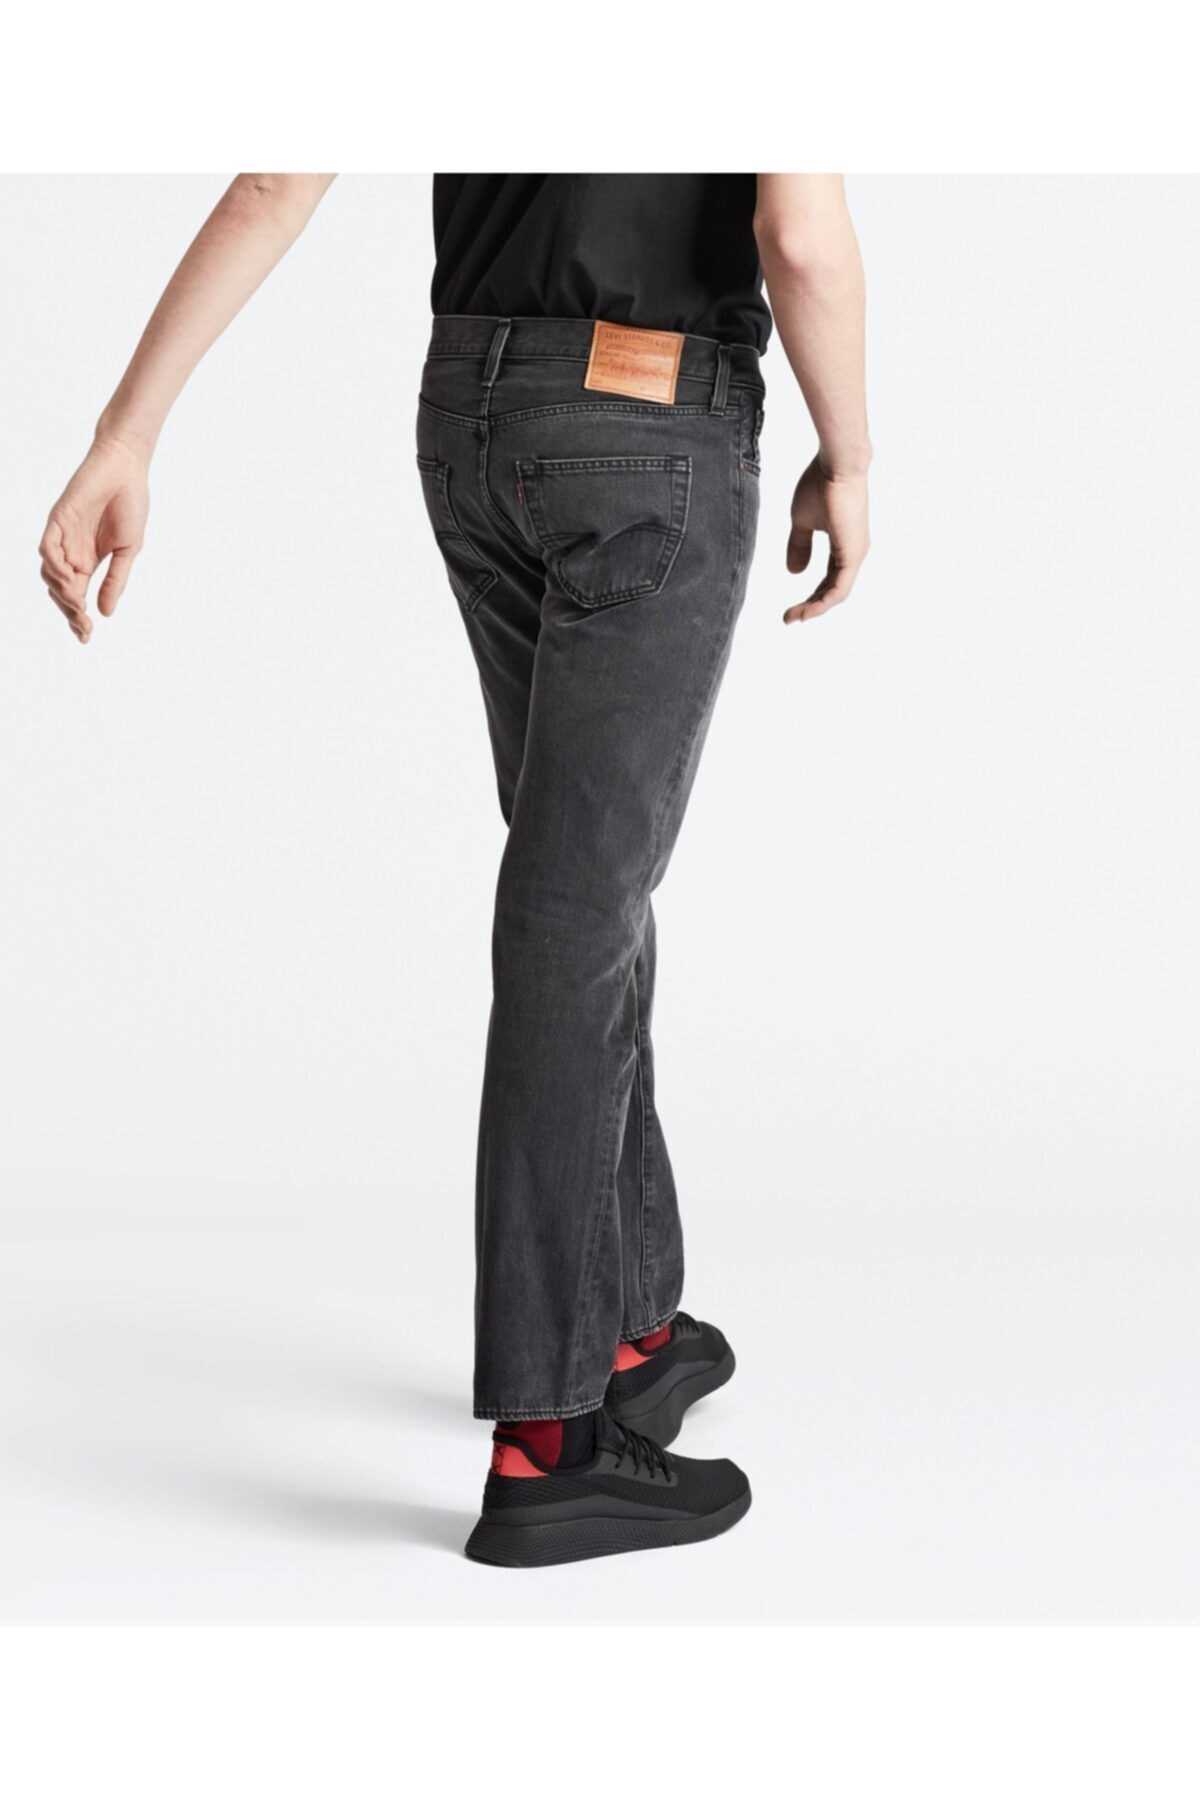 شلوار جین مردانه ارزان قیمت شیک Levis رنگ نقره ای کد ty32170122